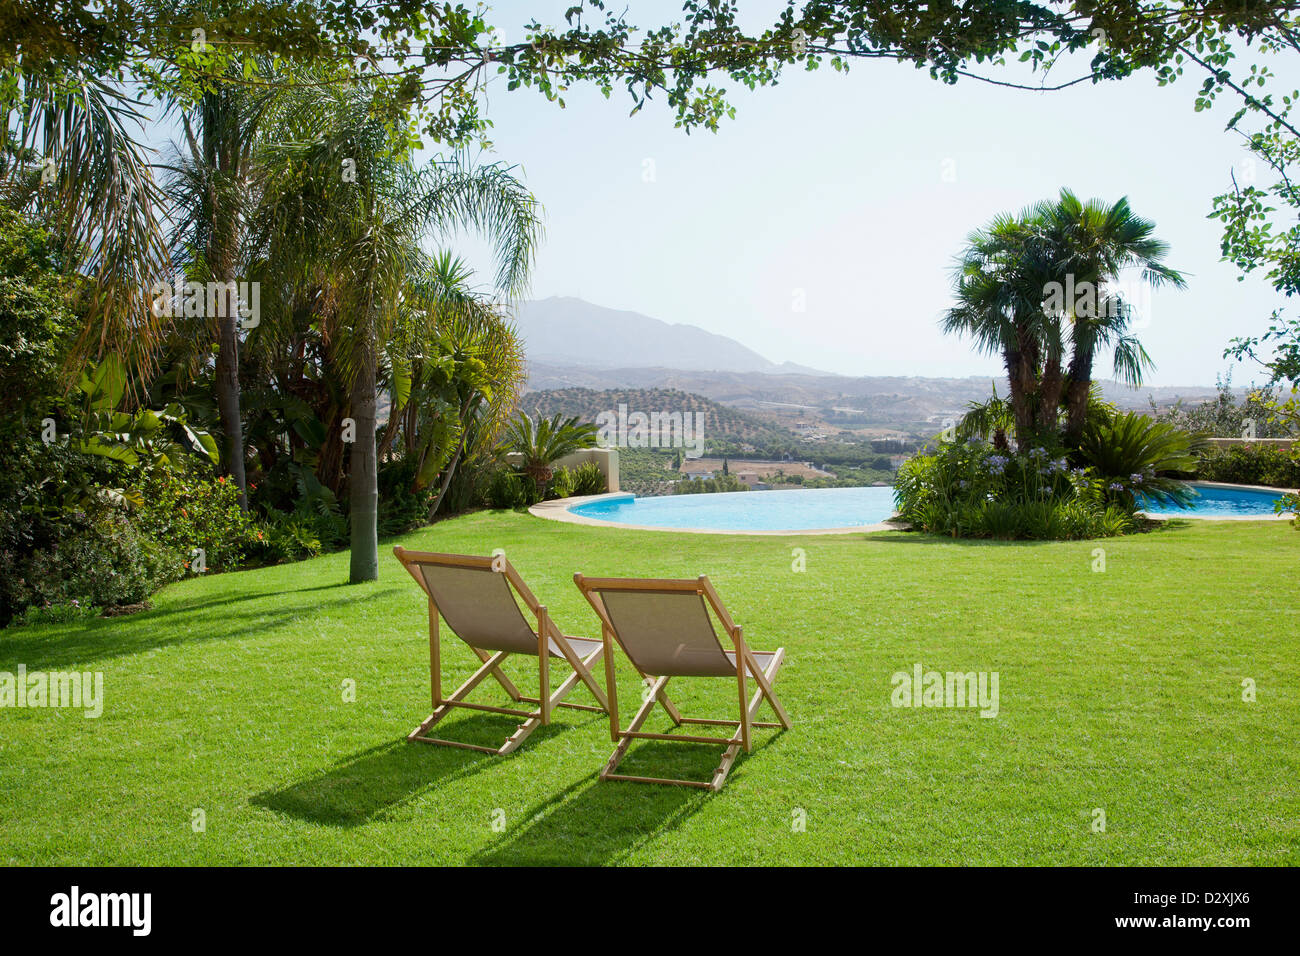 Lawn chair in erba si affacciano sulla piscina Foto Stock